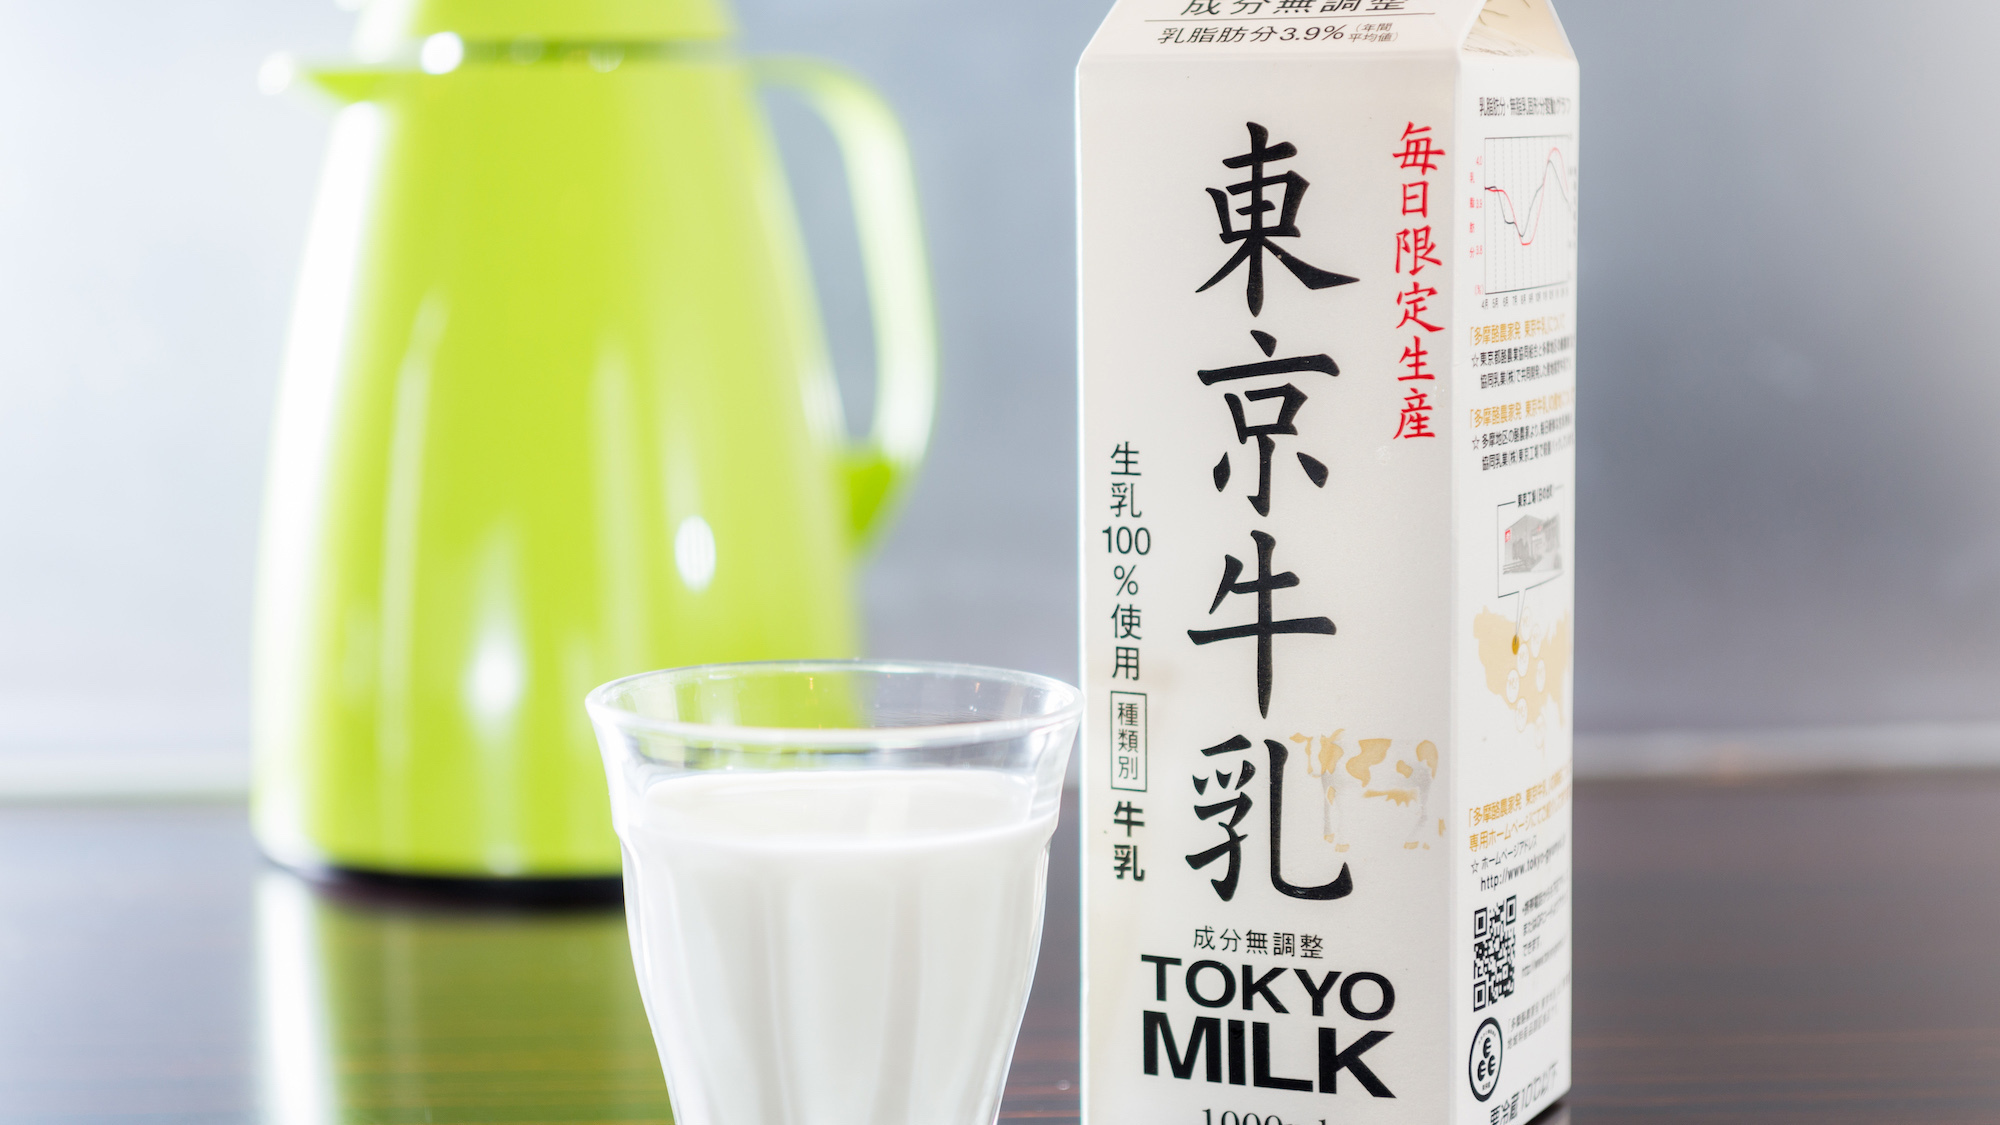 牛乳は東京牛乳をご用意しております